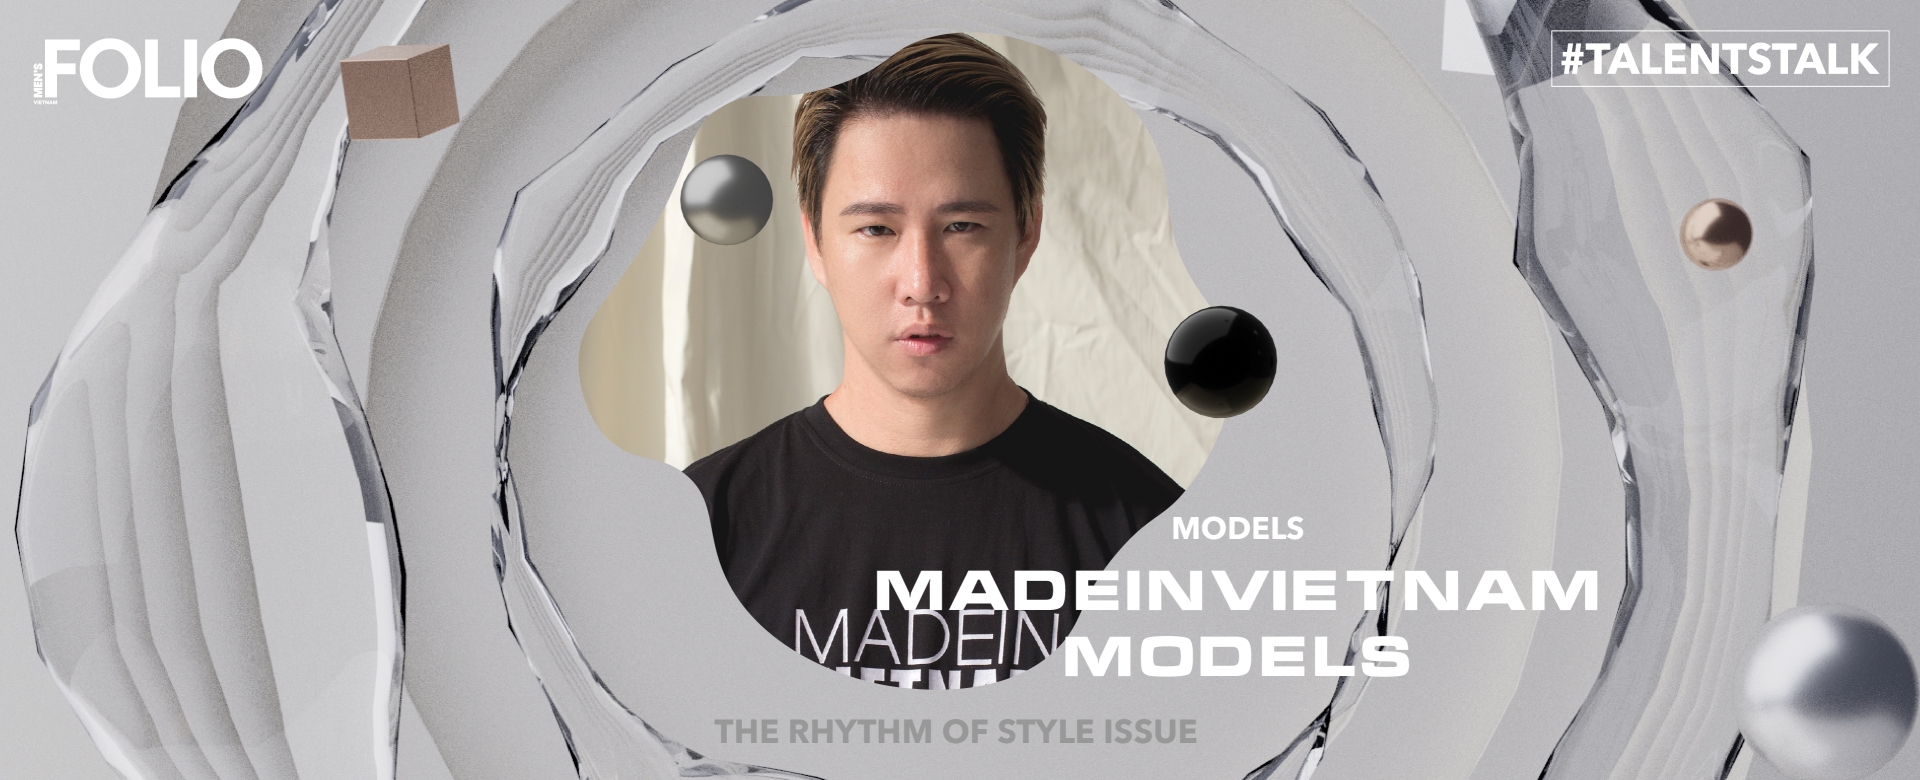 Madeinvietnam Models & tham vọng người mẫu Việt sải bước tại trời Tây